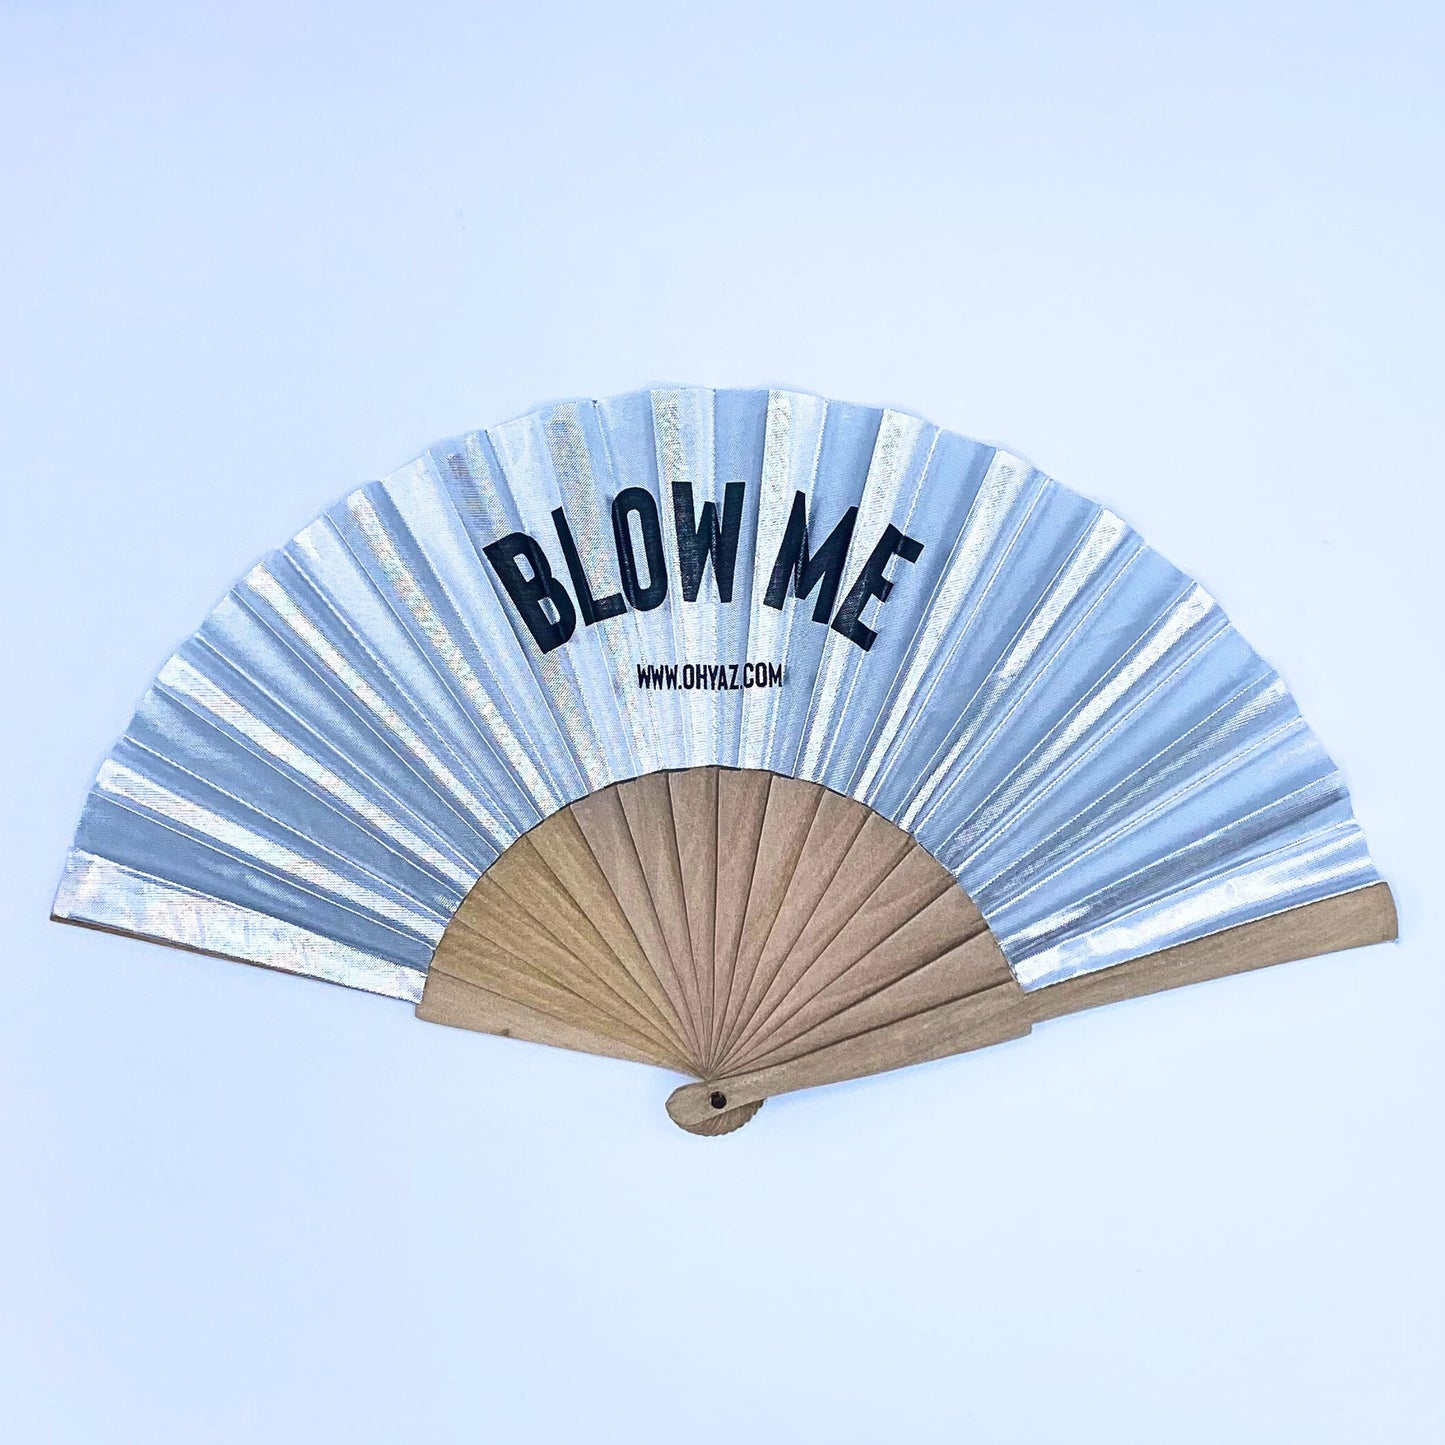 Blow Me - Fan